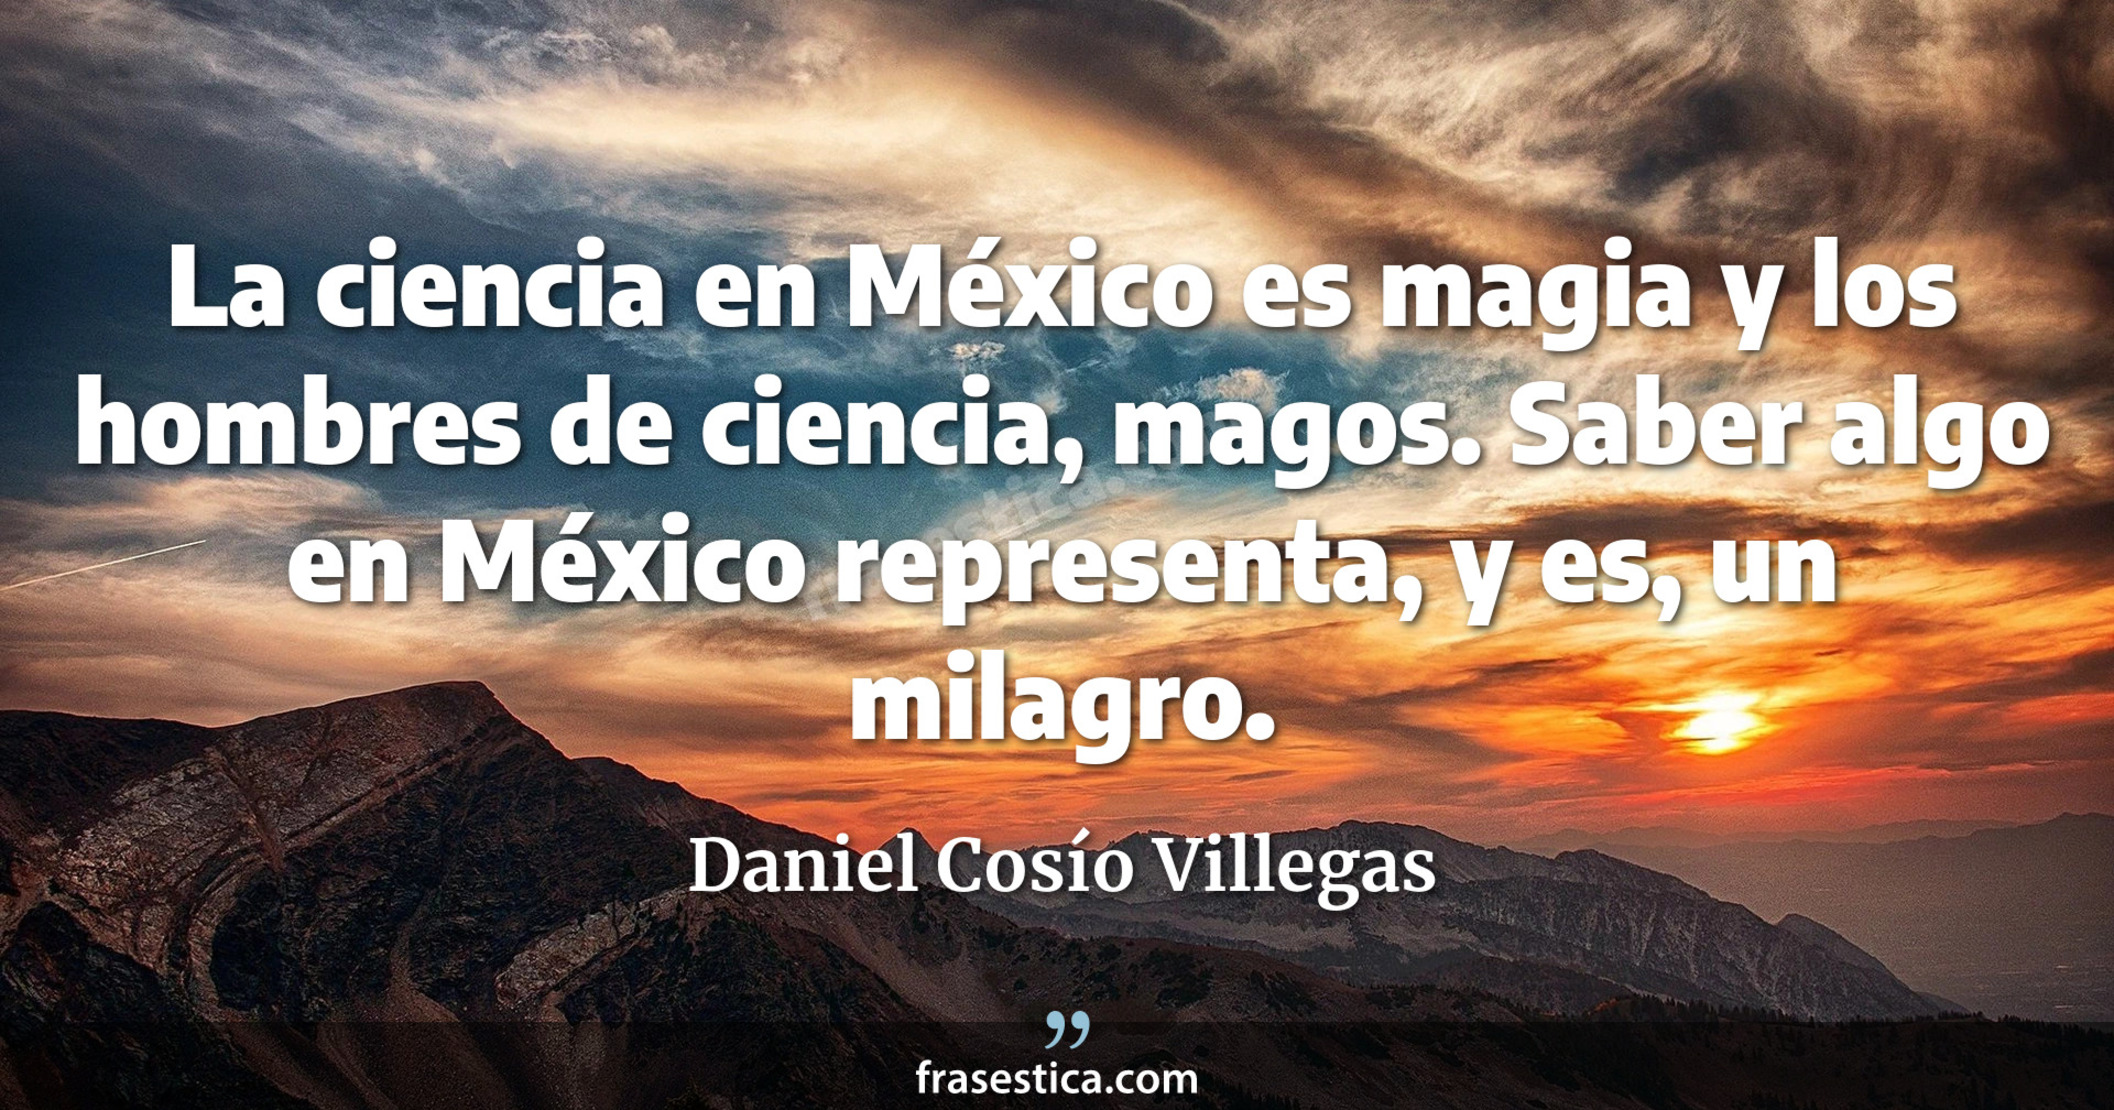 La ciencia en México es magia y los hombres de ciencia, magos. Saber algo en México representa, y es, un milagro. - Daniel Cosío Villegas